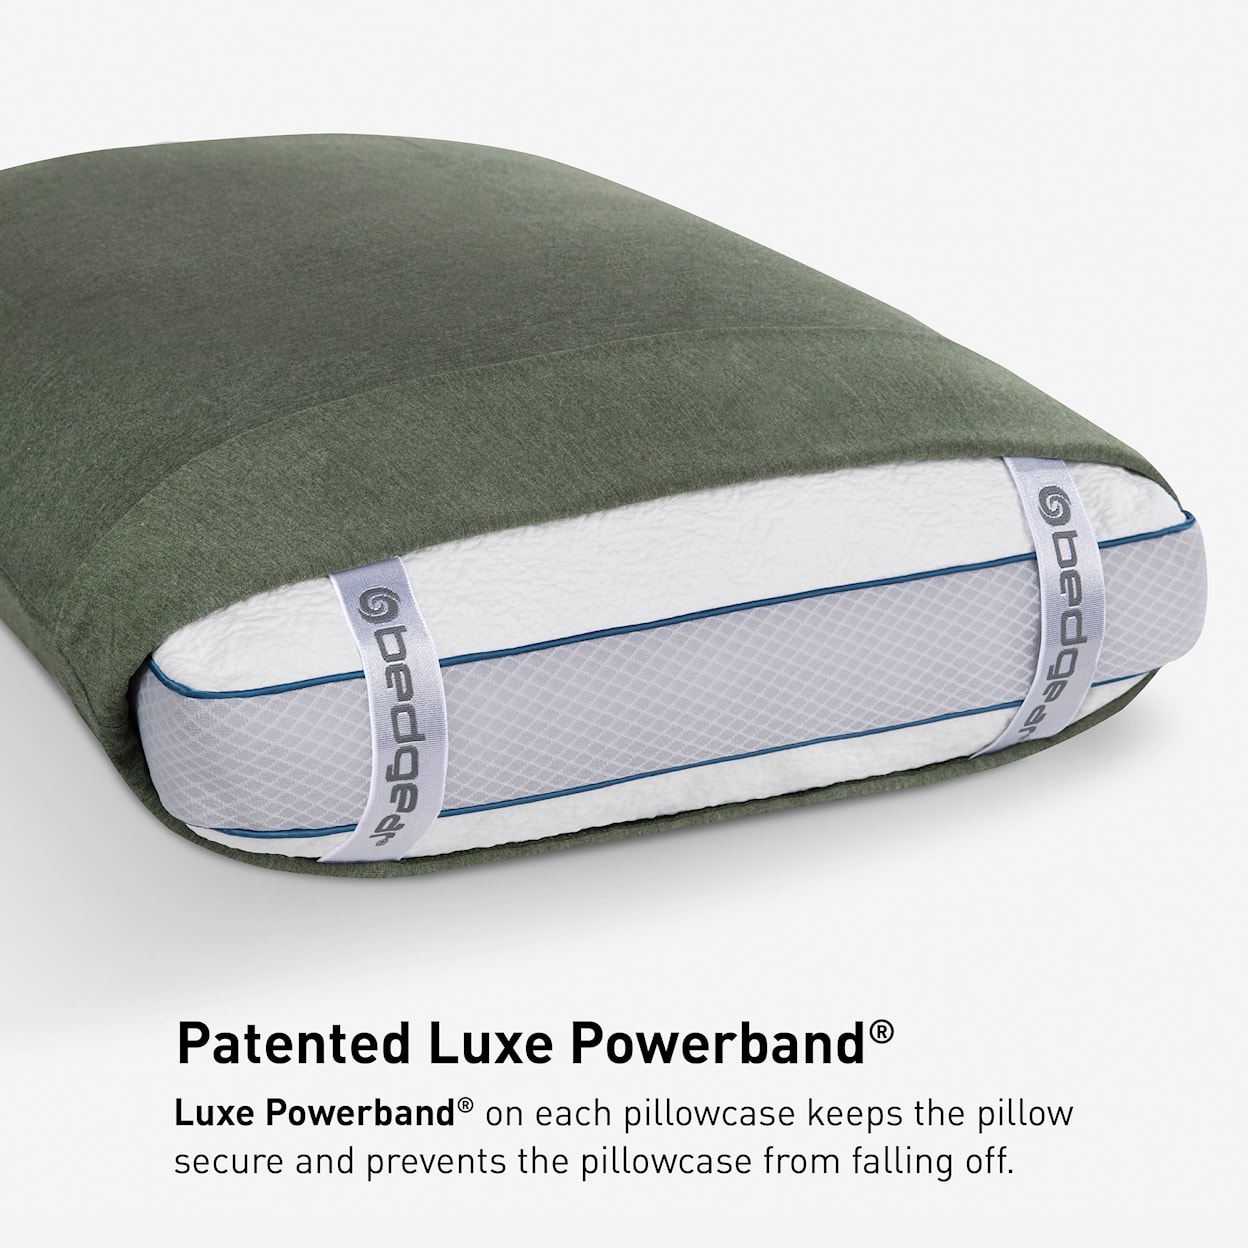 Bedgear Hyper-Wool Sheets Sheet Set, Green, Queen